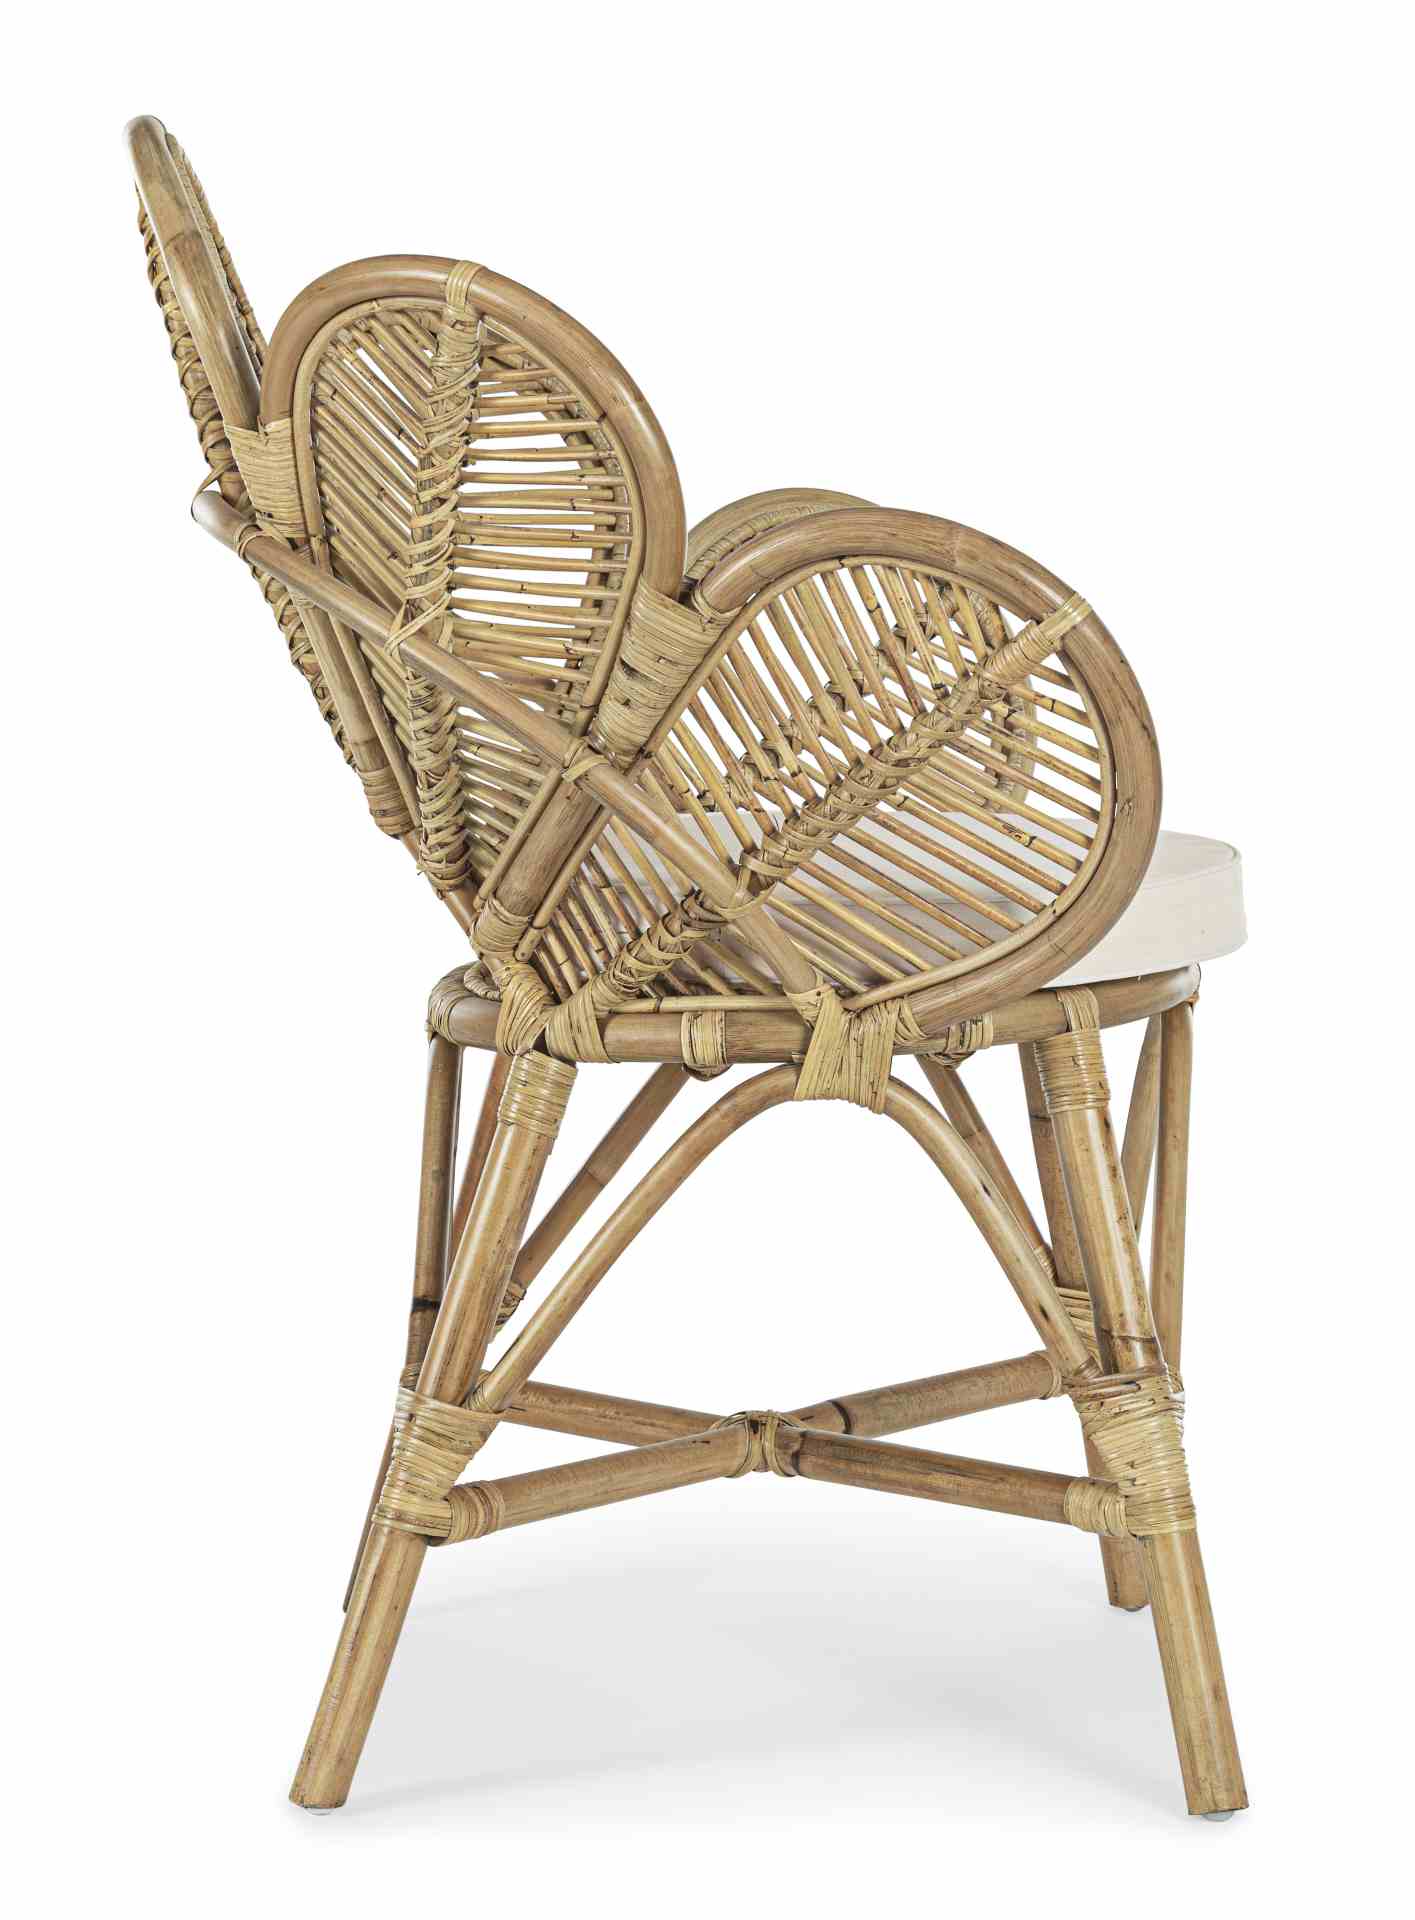 Der Stuhl Flores überzeugt mit seiner besonderen Form. Gefertigt wurde der Stuhl aus Rattan, welcher einen natürlichen Farbton besitzt. Der Stuhl wird inklusive Sitzkissen aus Baumwolle geliefert. Die Sitzhöhe des Stuhls beträgt 46 cm.